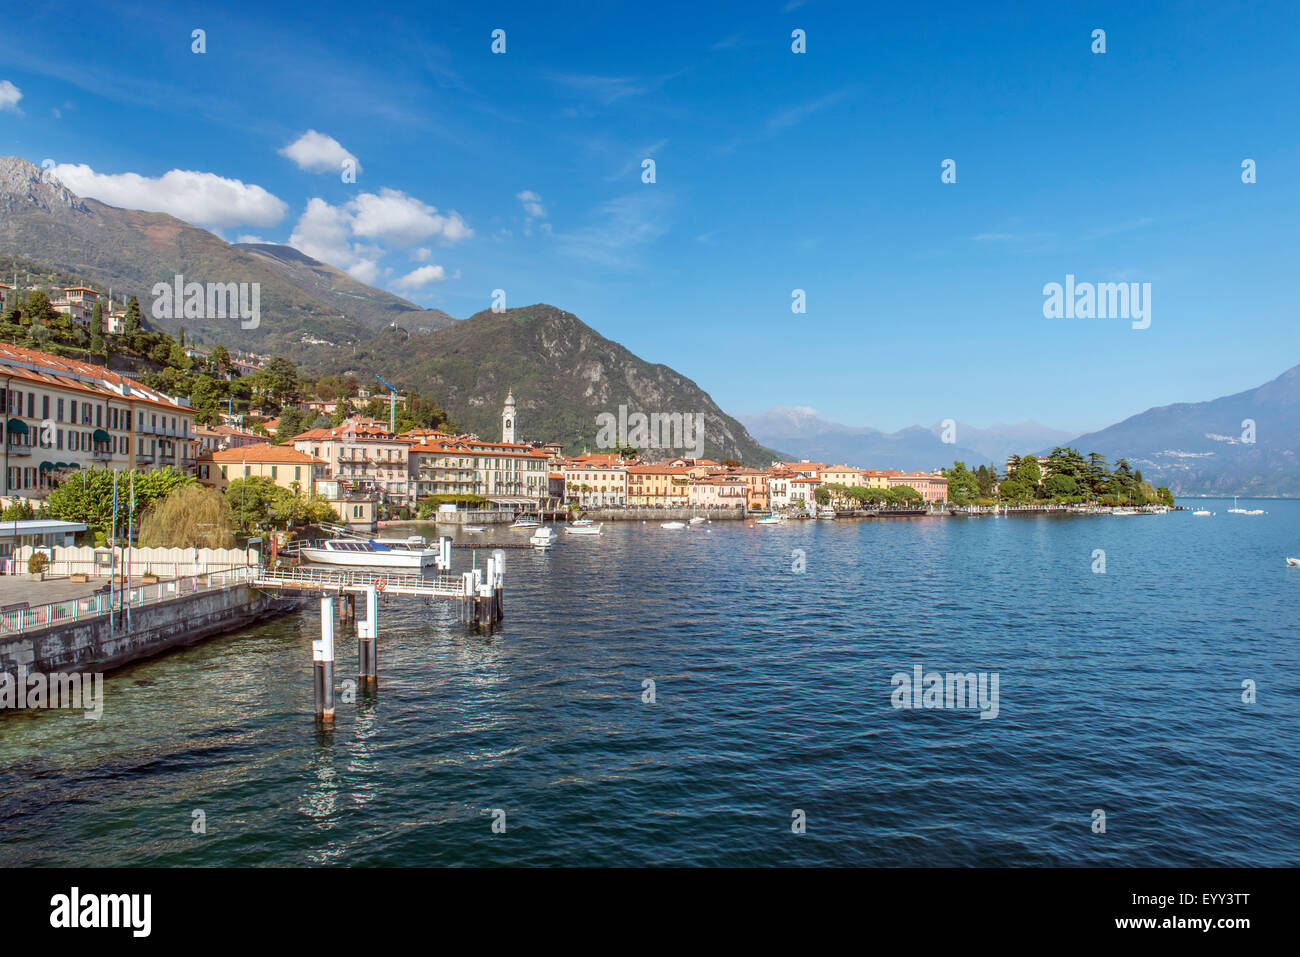 Lake Como and buildings in remote landscape, Menaggio, Como, Italy Stock Photo